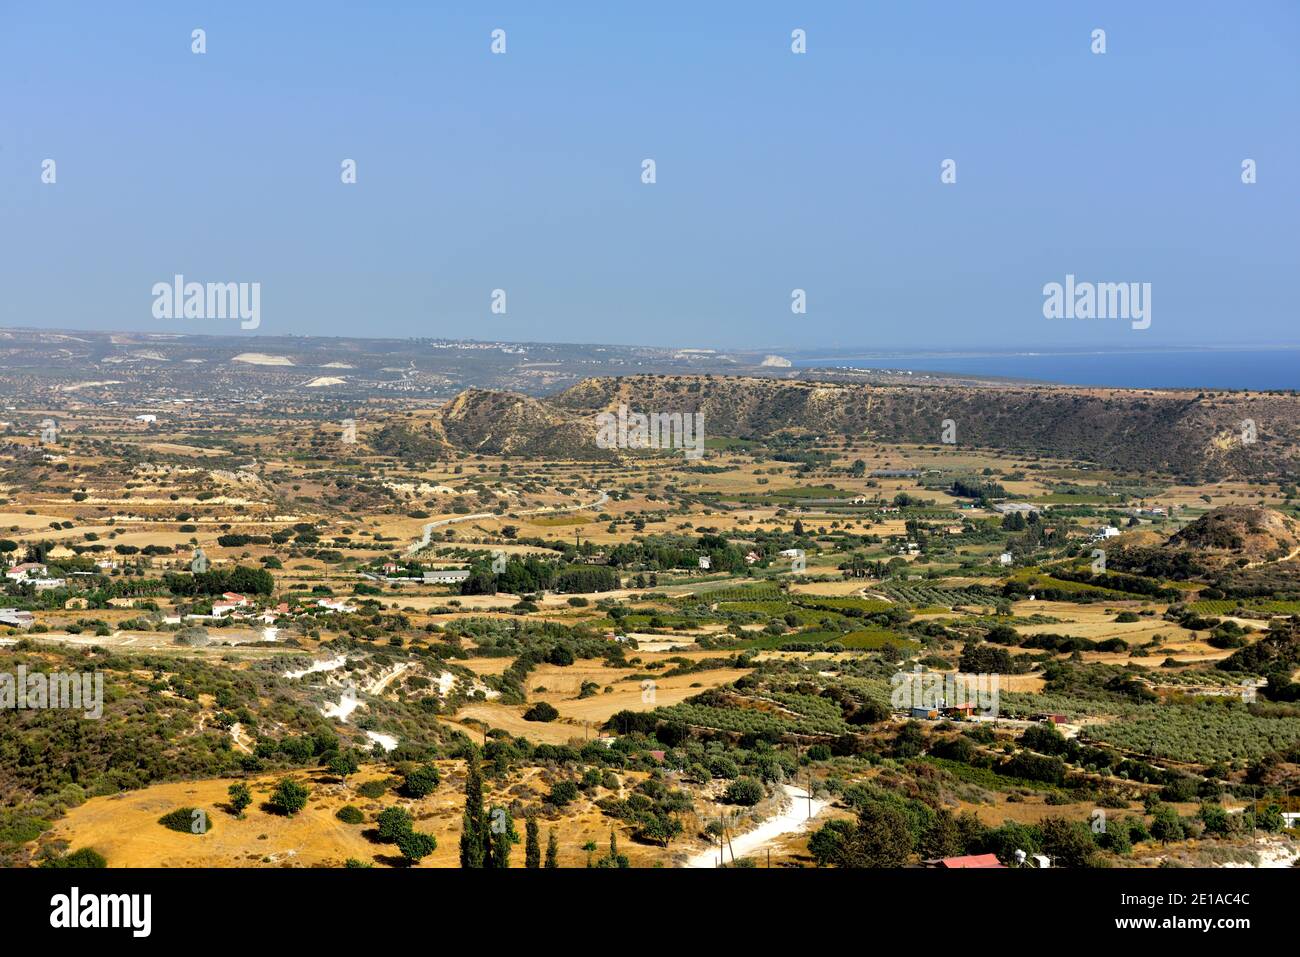 Ampia vista del paesaggio interno di Cipro con il Mar Mediterraneo in lontananza, la regione Pissouri con case sparse e colline Foto Stock